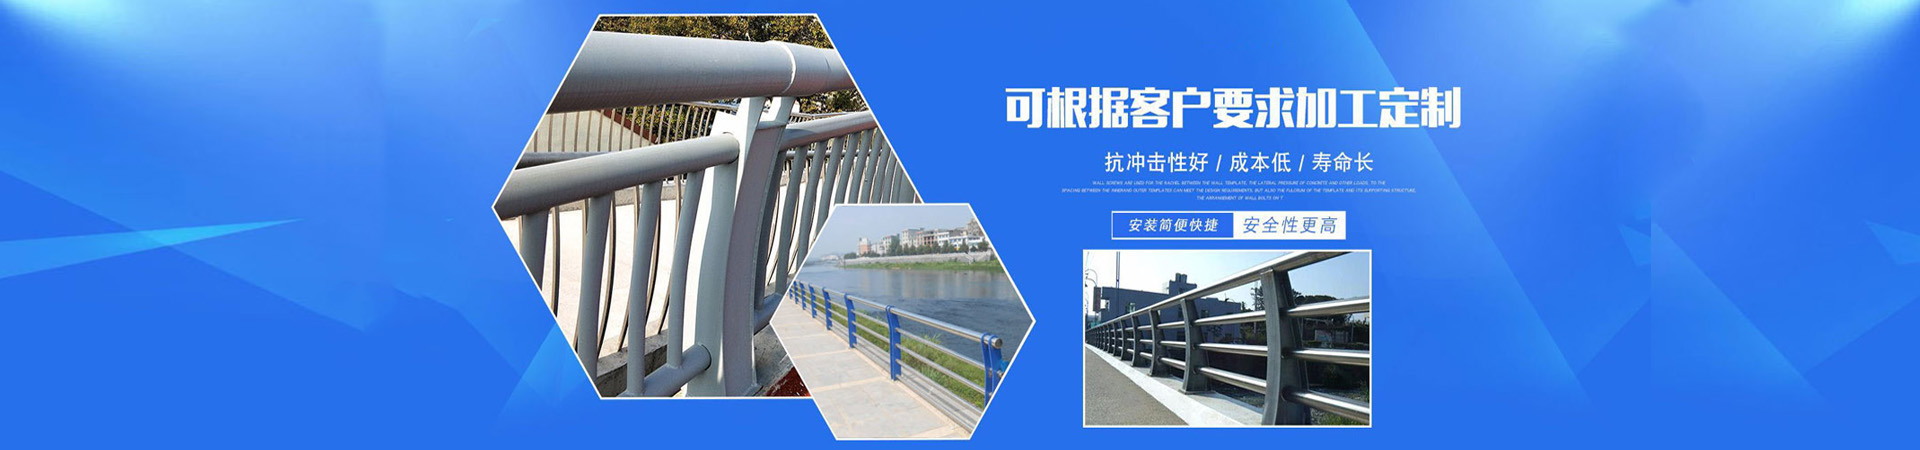 桥梁铝合金栏杆、香港本地桥梁铝合金栏杆、香港、香港桥梁铝合金栏杆